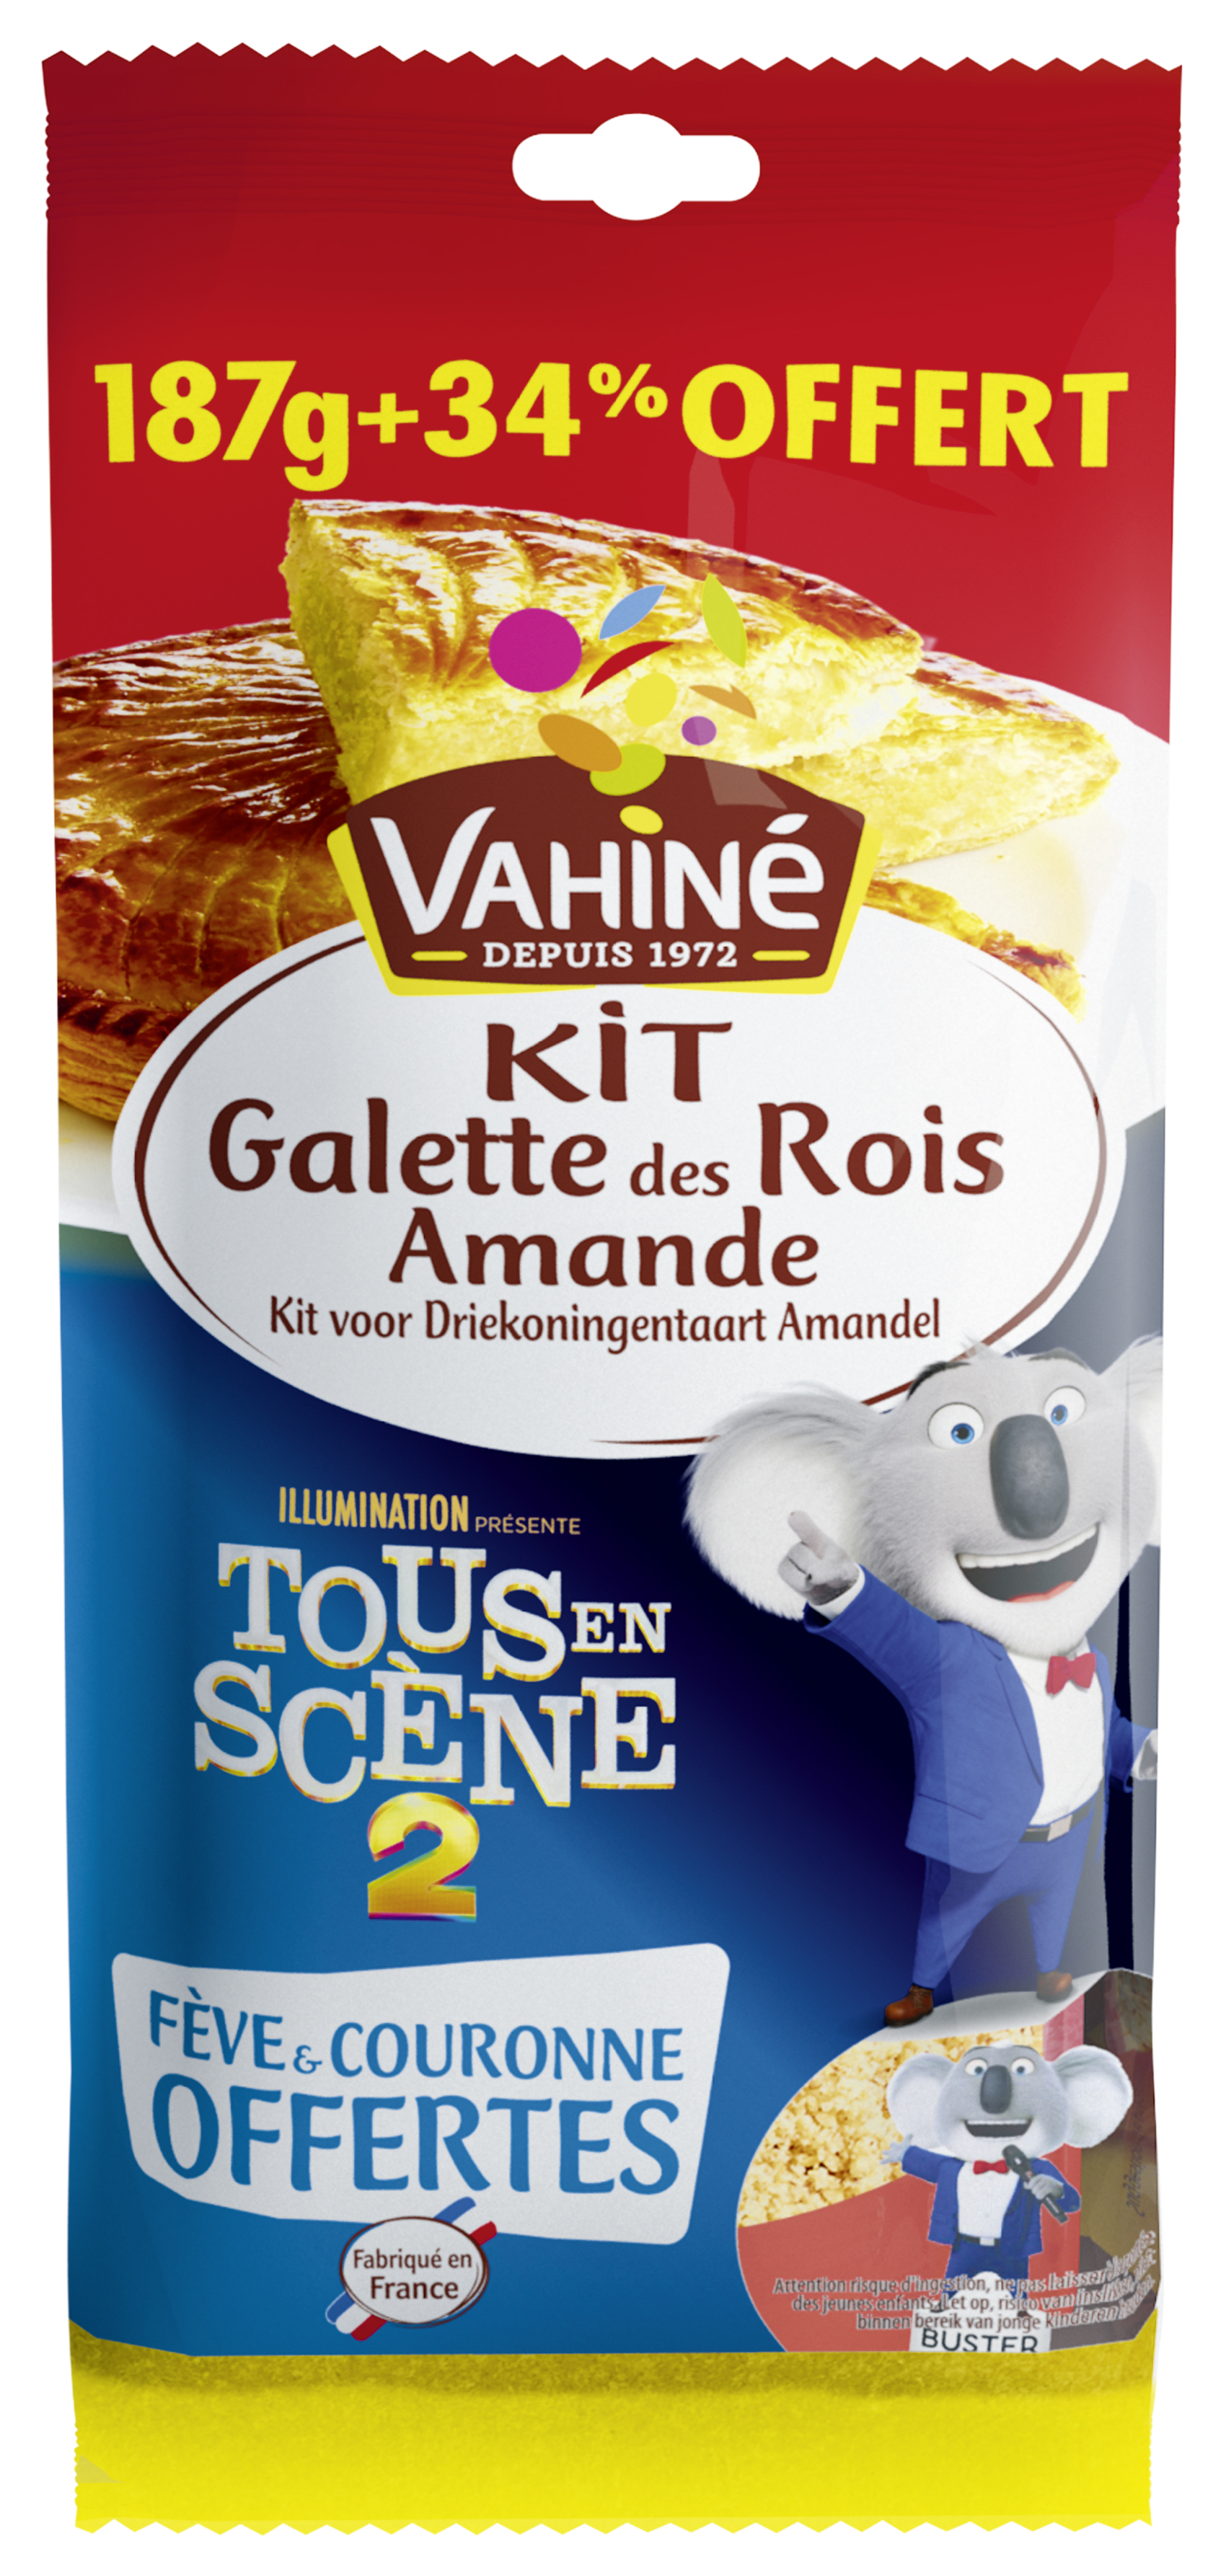 Promo Kit Galette Des Rois A Mande  Vahine chez E.Leclerc